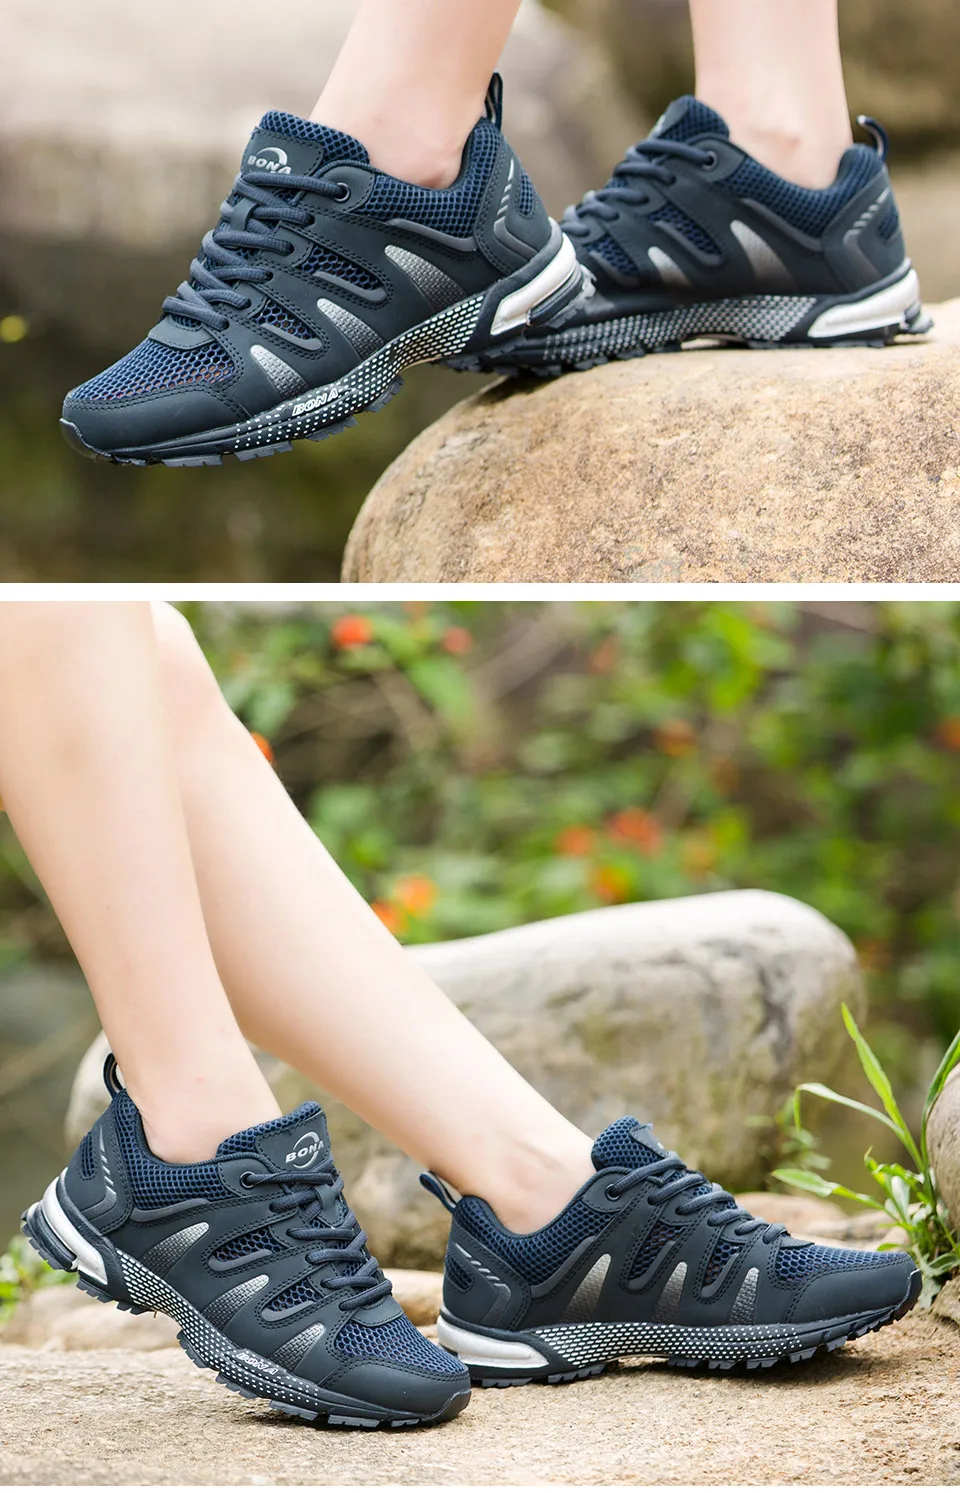 BONA/Новое поступление; классические стильные женские кроссовки для бега; удобная спортивная обувь для женщин; Быстрая